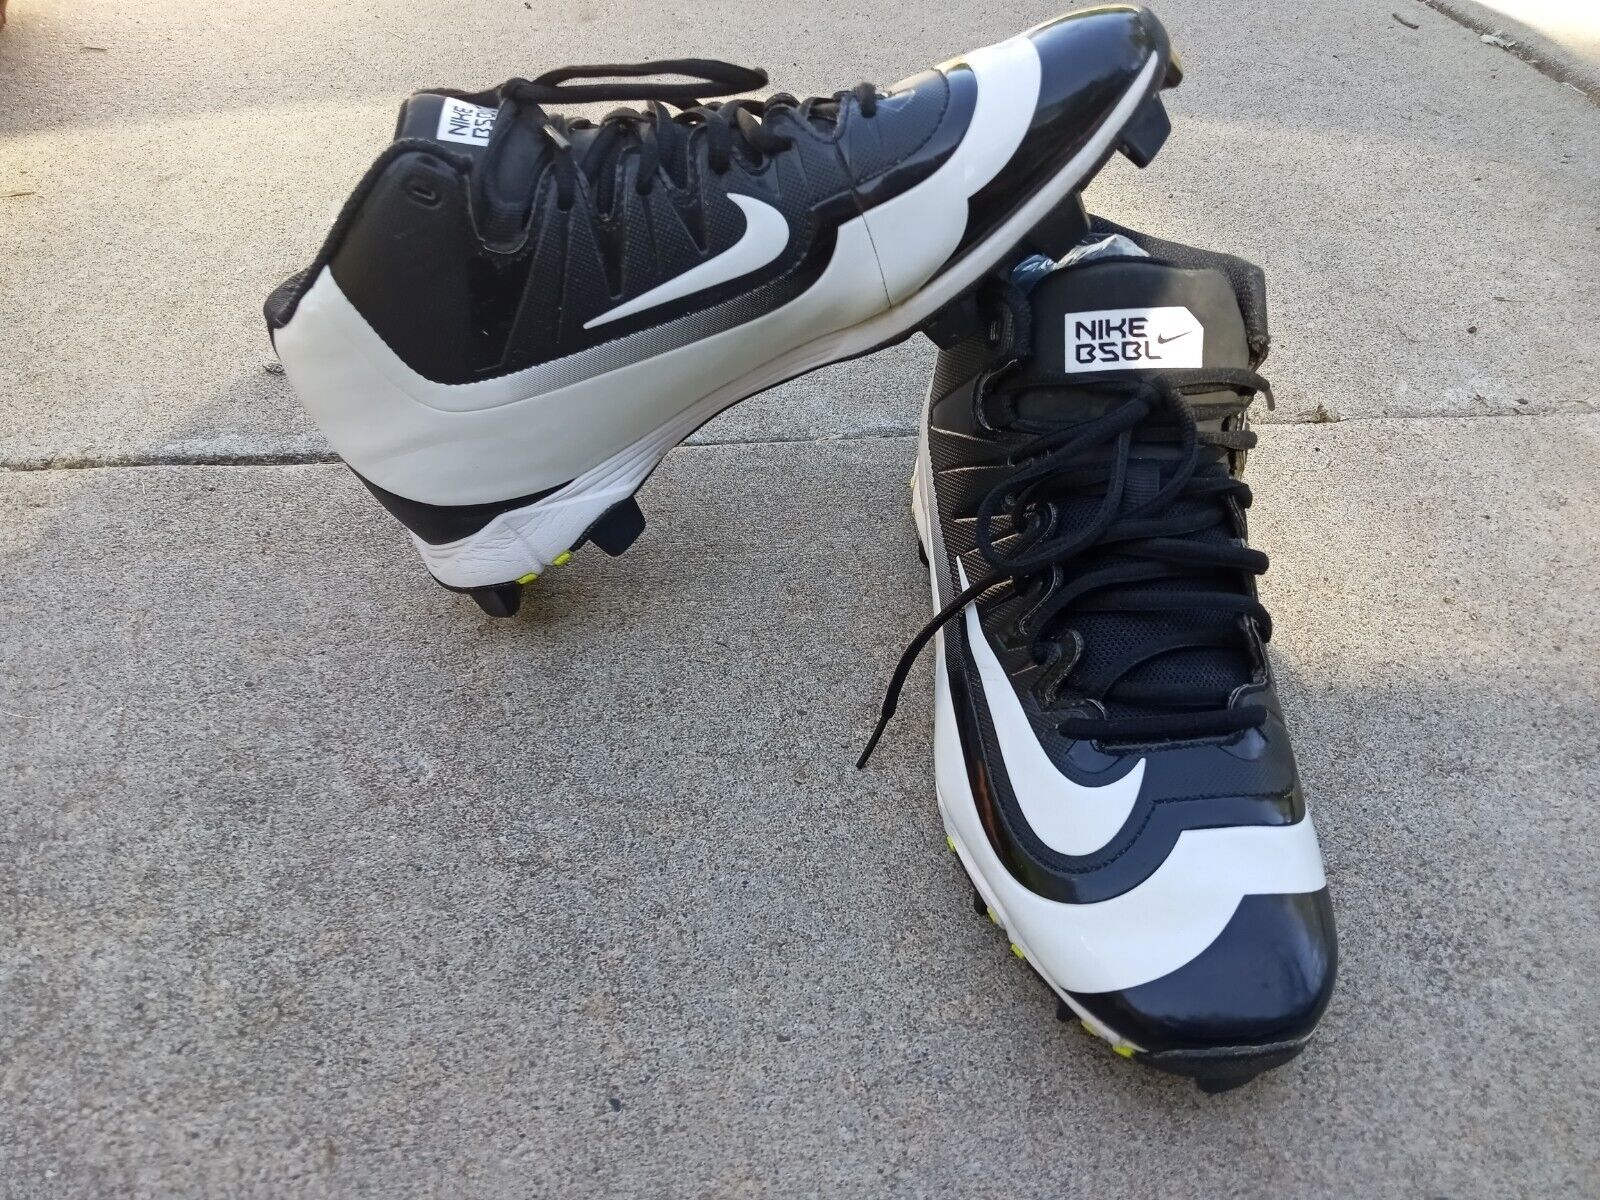 Nike Huarache 2KFilth Keystone Baseball Cleat 807141-017 Black/White Size 10.5